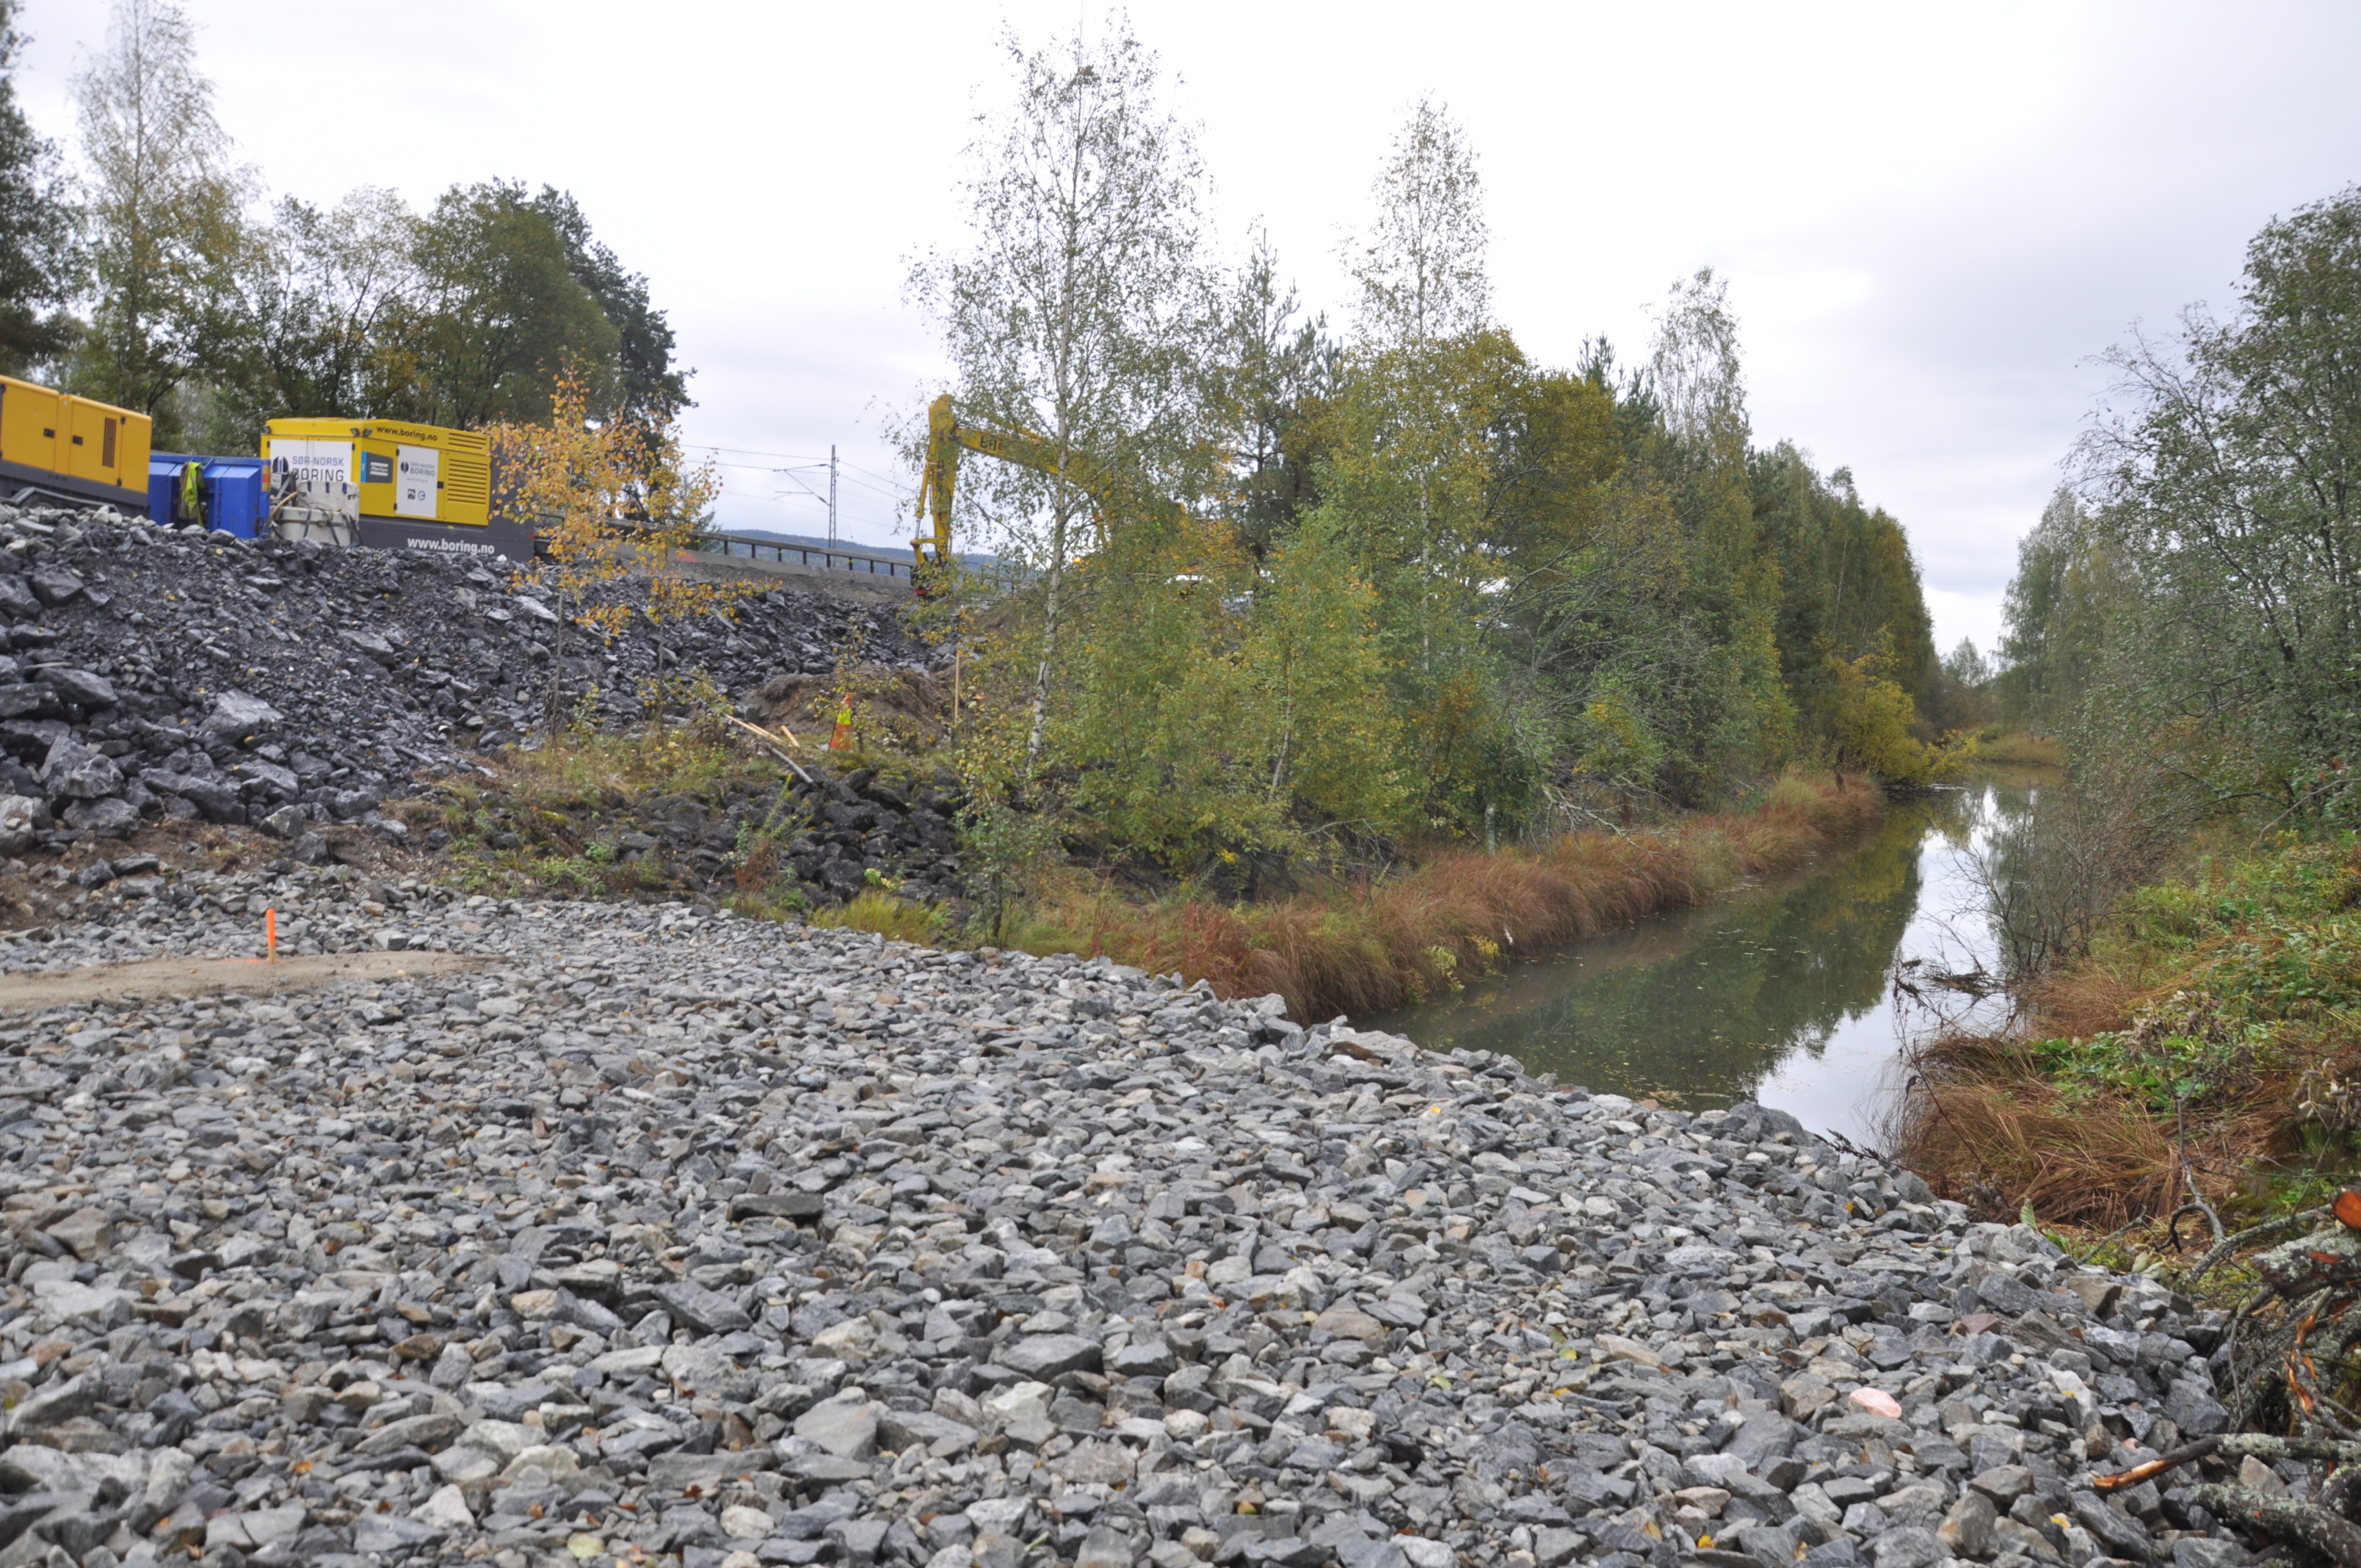 Når vegen skal utvides må også betongtunnelen til Loeselva forlenges. (Foto: Kjell Wold)